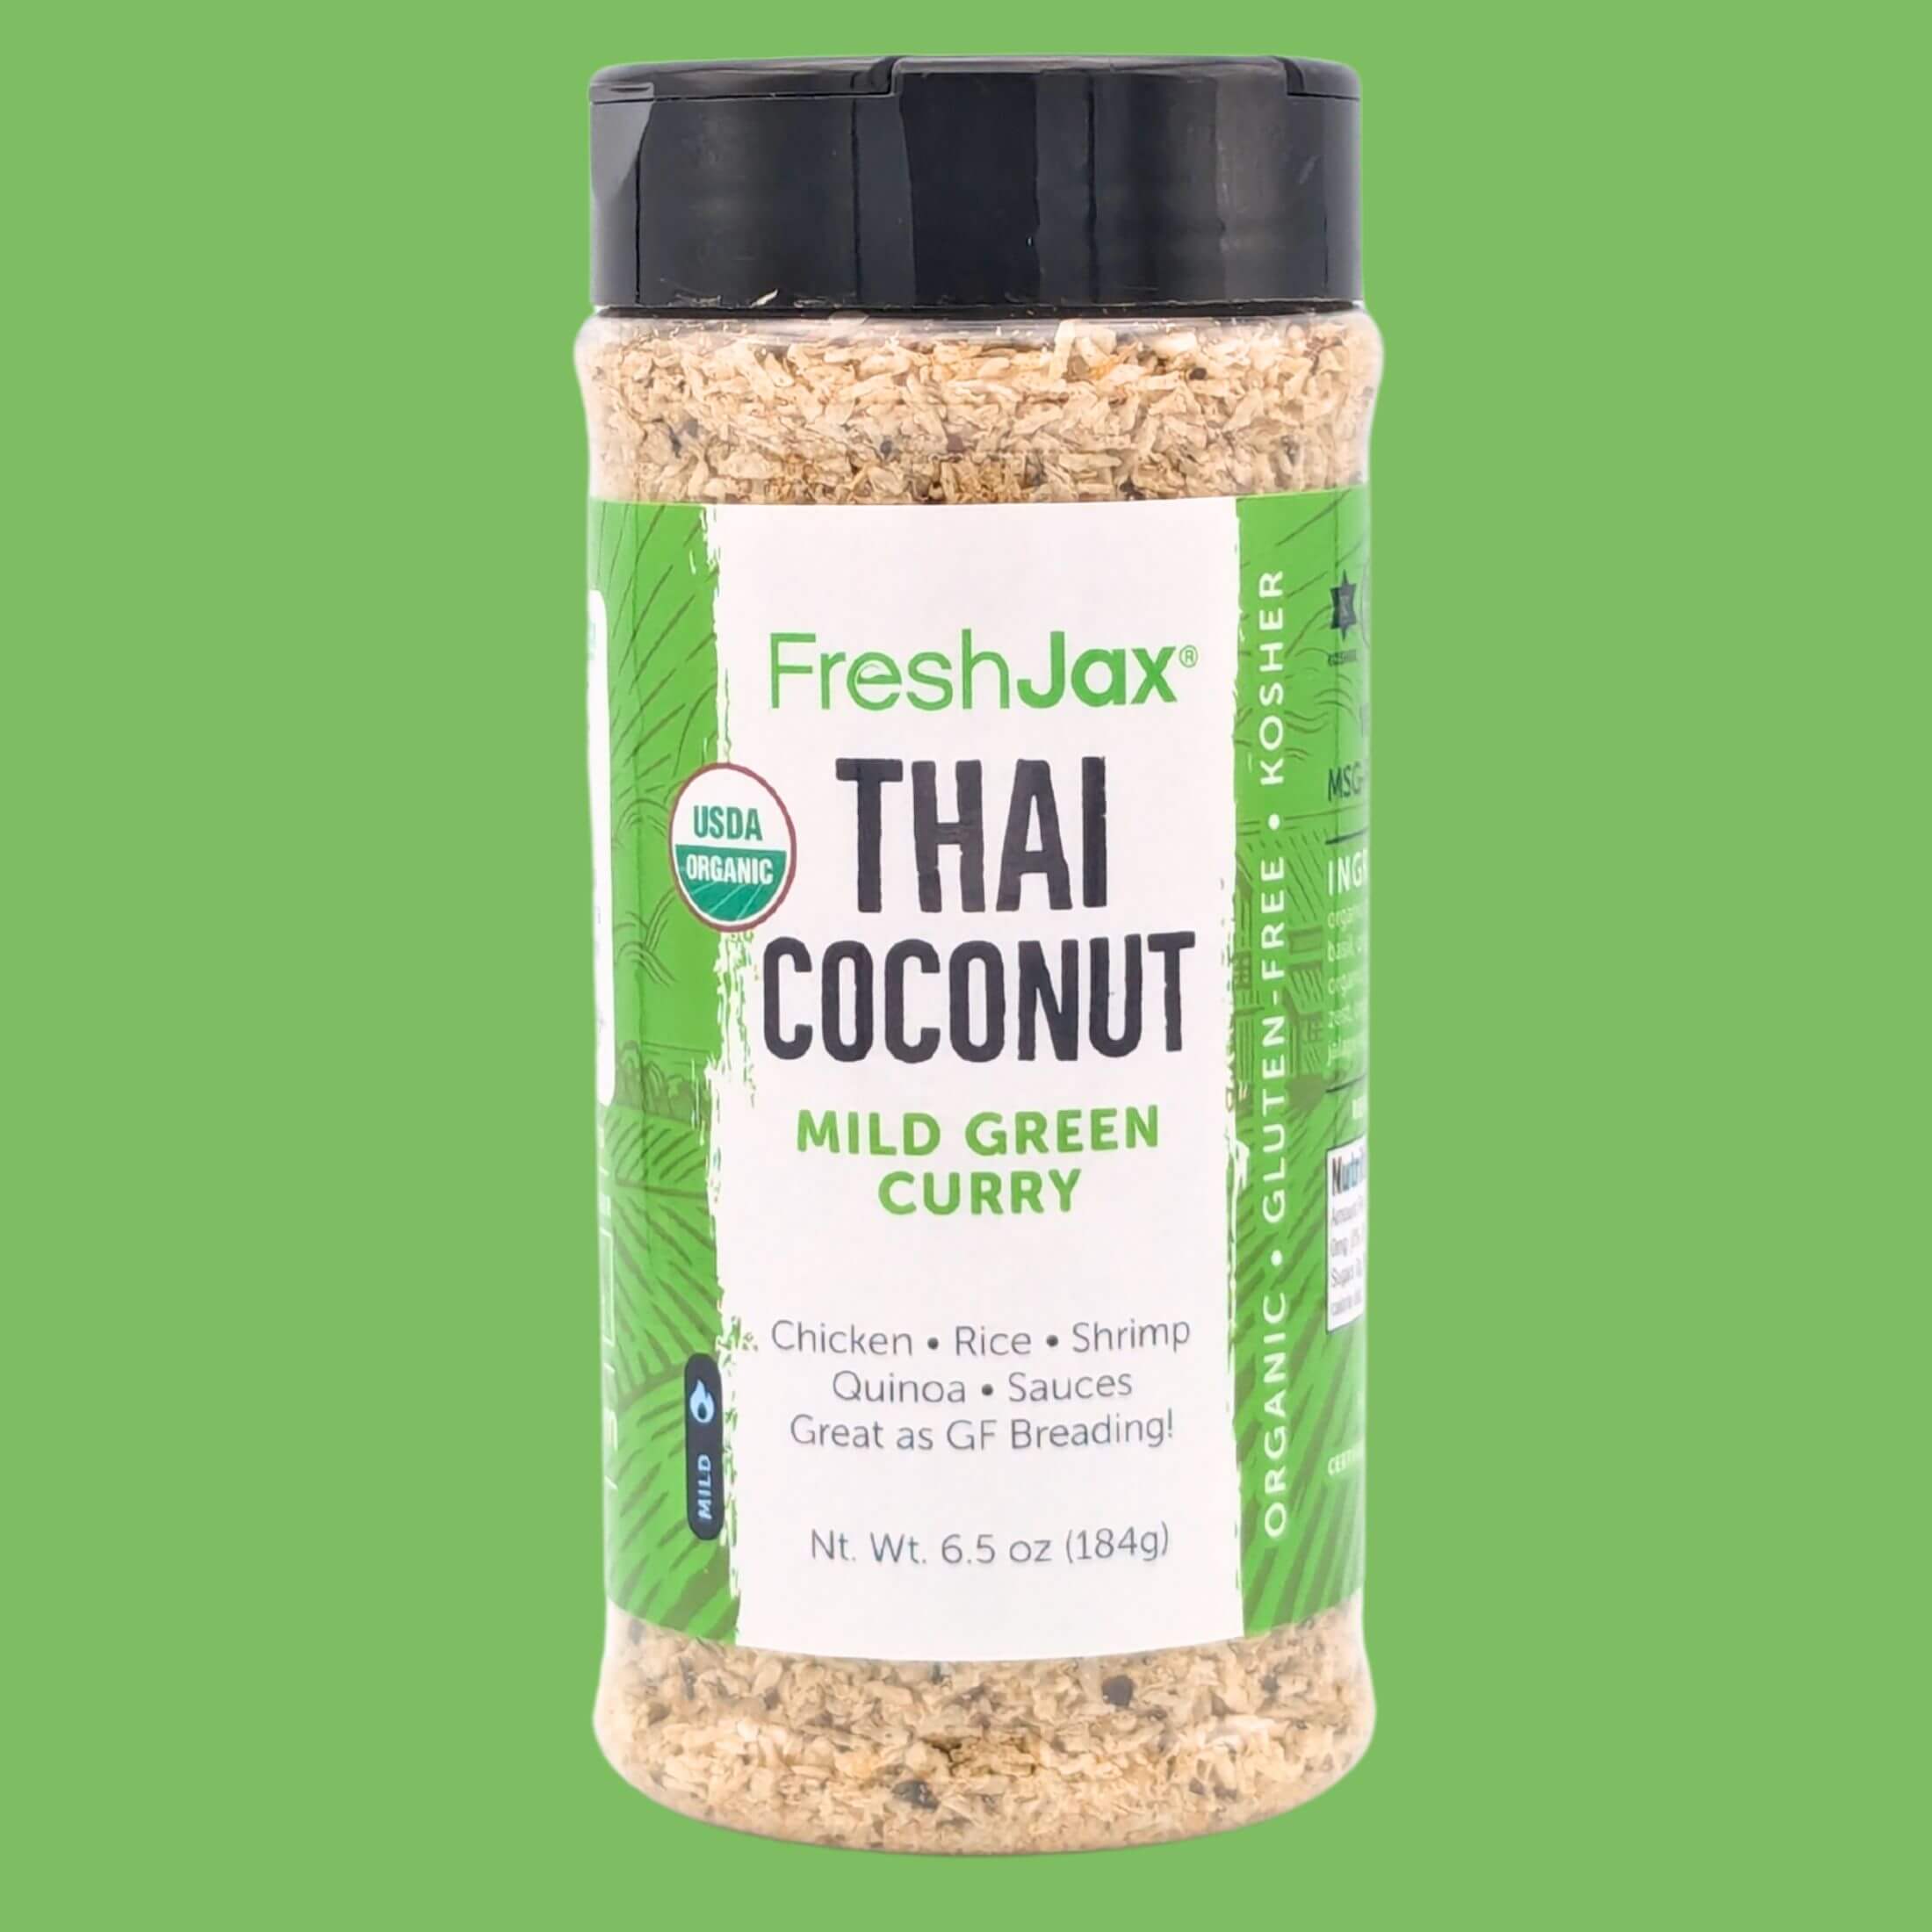 FreshJax Thai Coconut Mild Green Curry